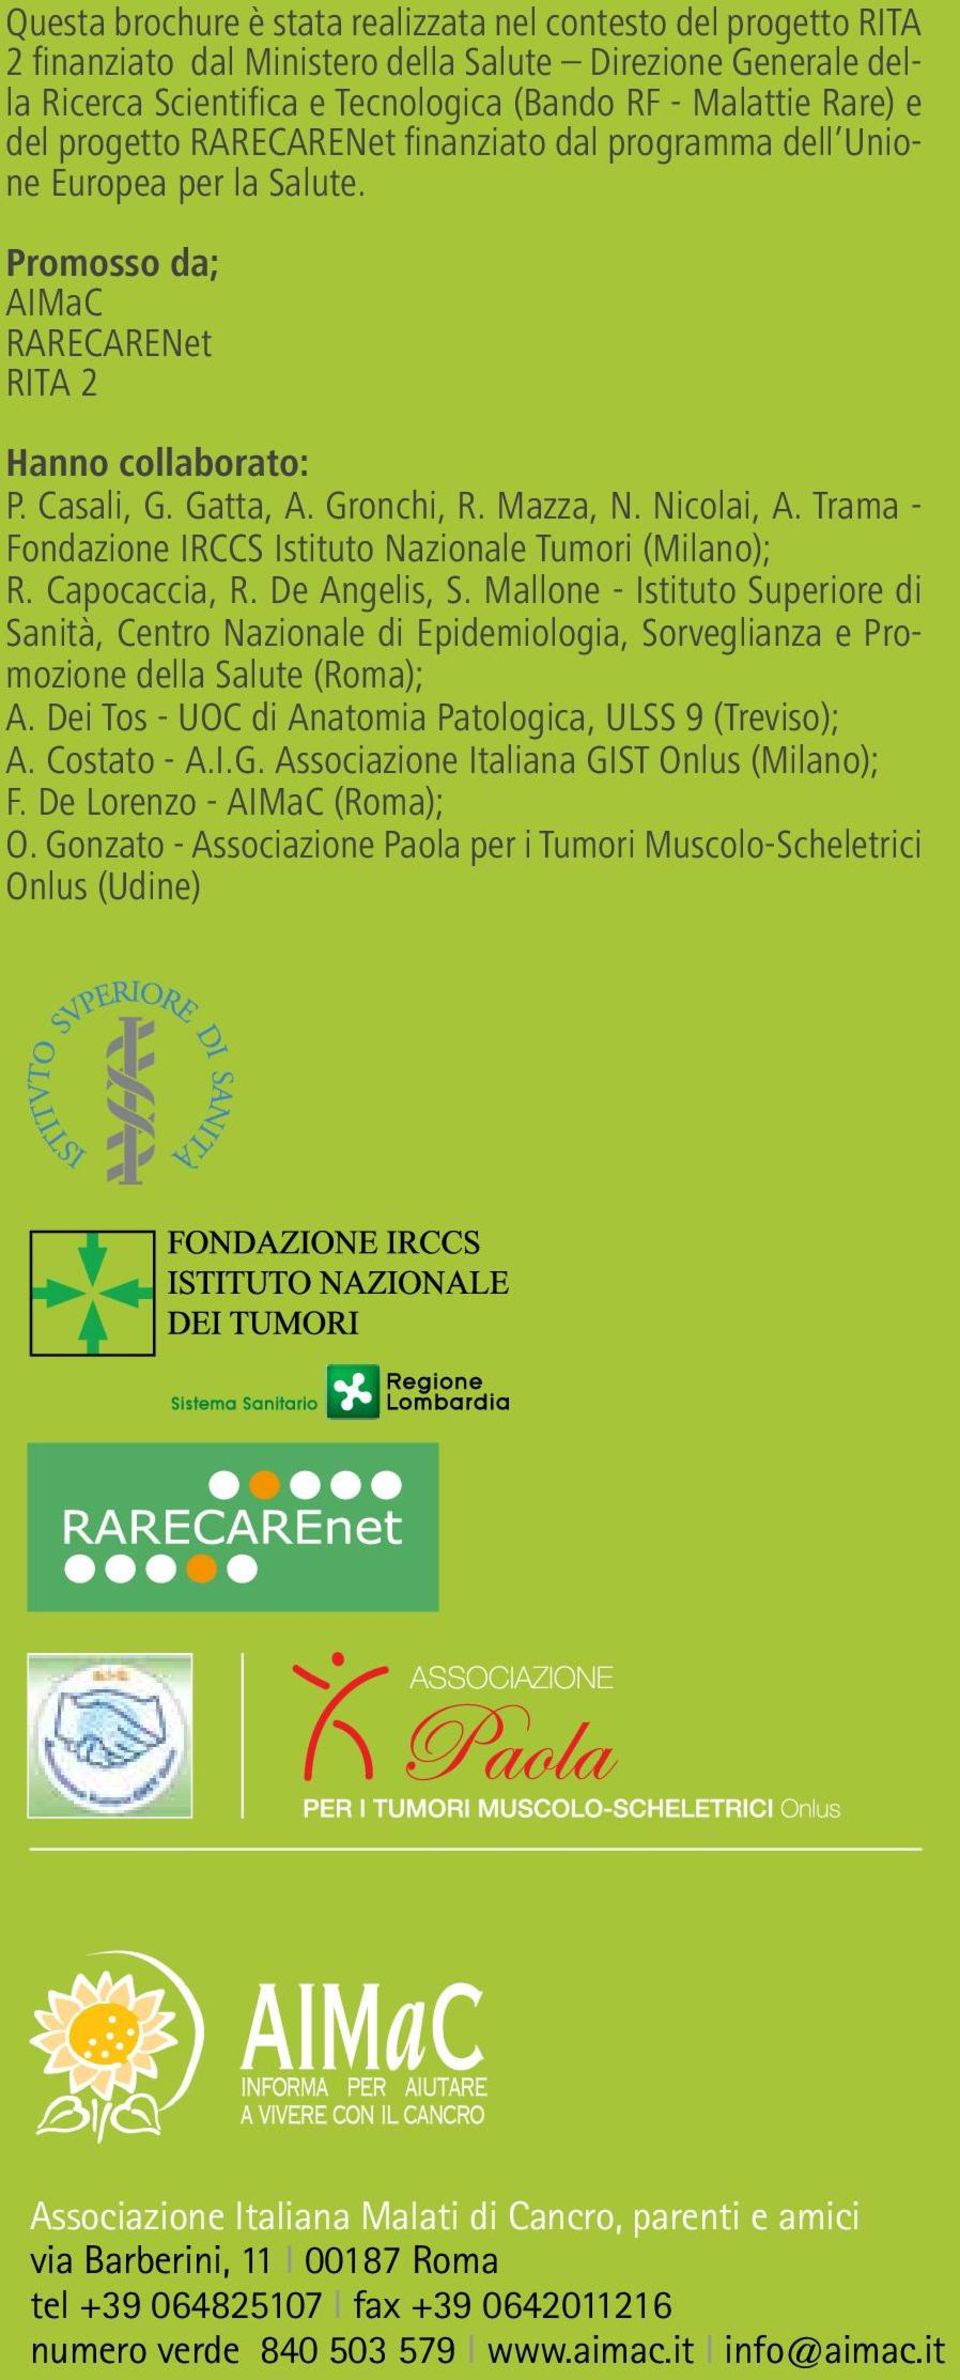 Trama - Fondazione IRCCS Istituto Nazionale Tumori (Milano); R. Capocaccia, R. De Angelis, S.